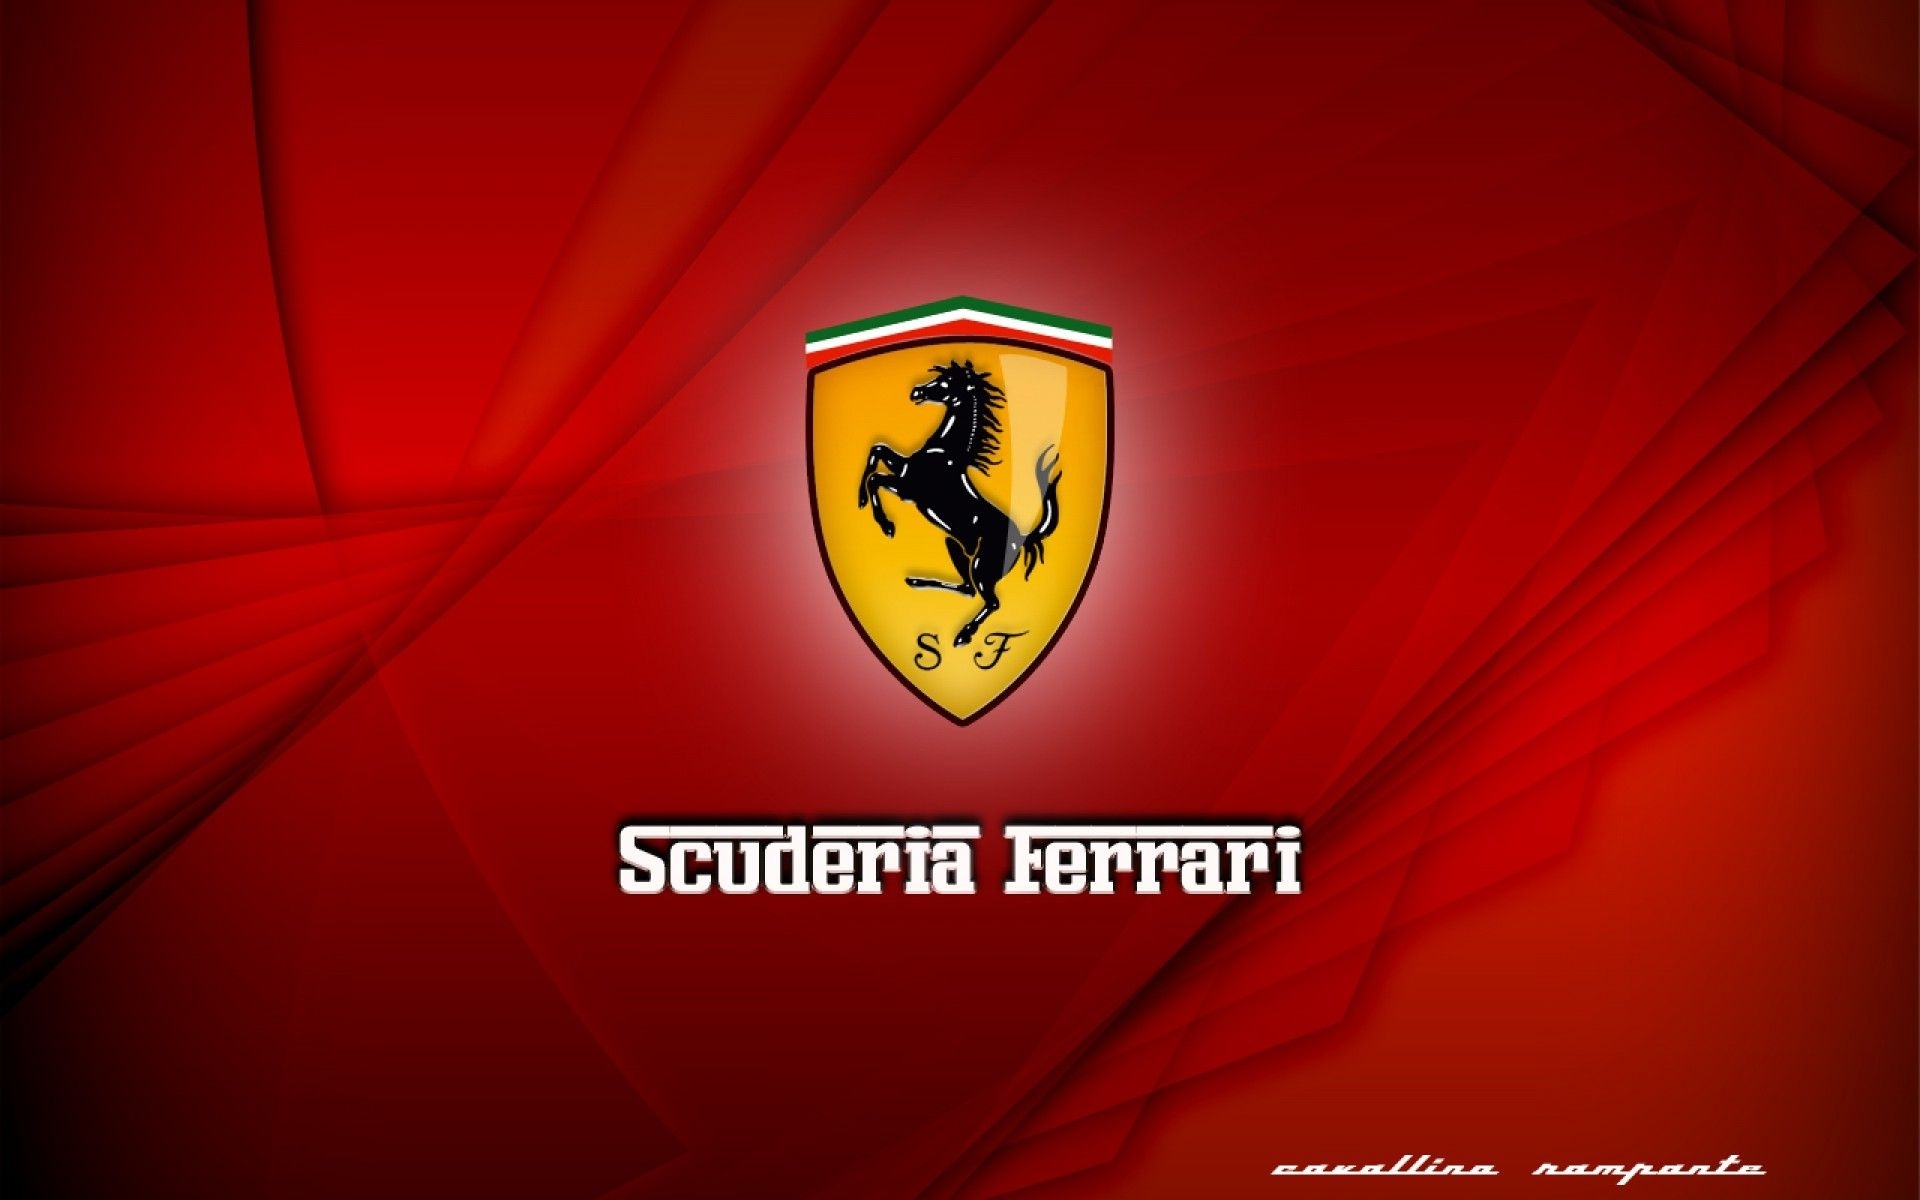 Ferrari de. Скудерия Феррари. Ferrari f1 logo. Scuderia Ferrari логотип. Феррари формула 1 логотип.